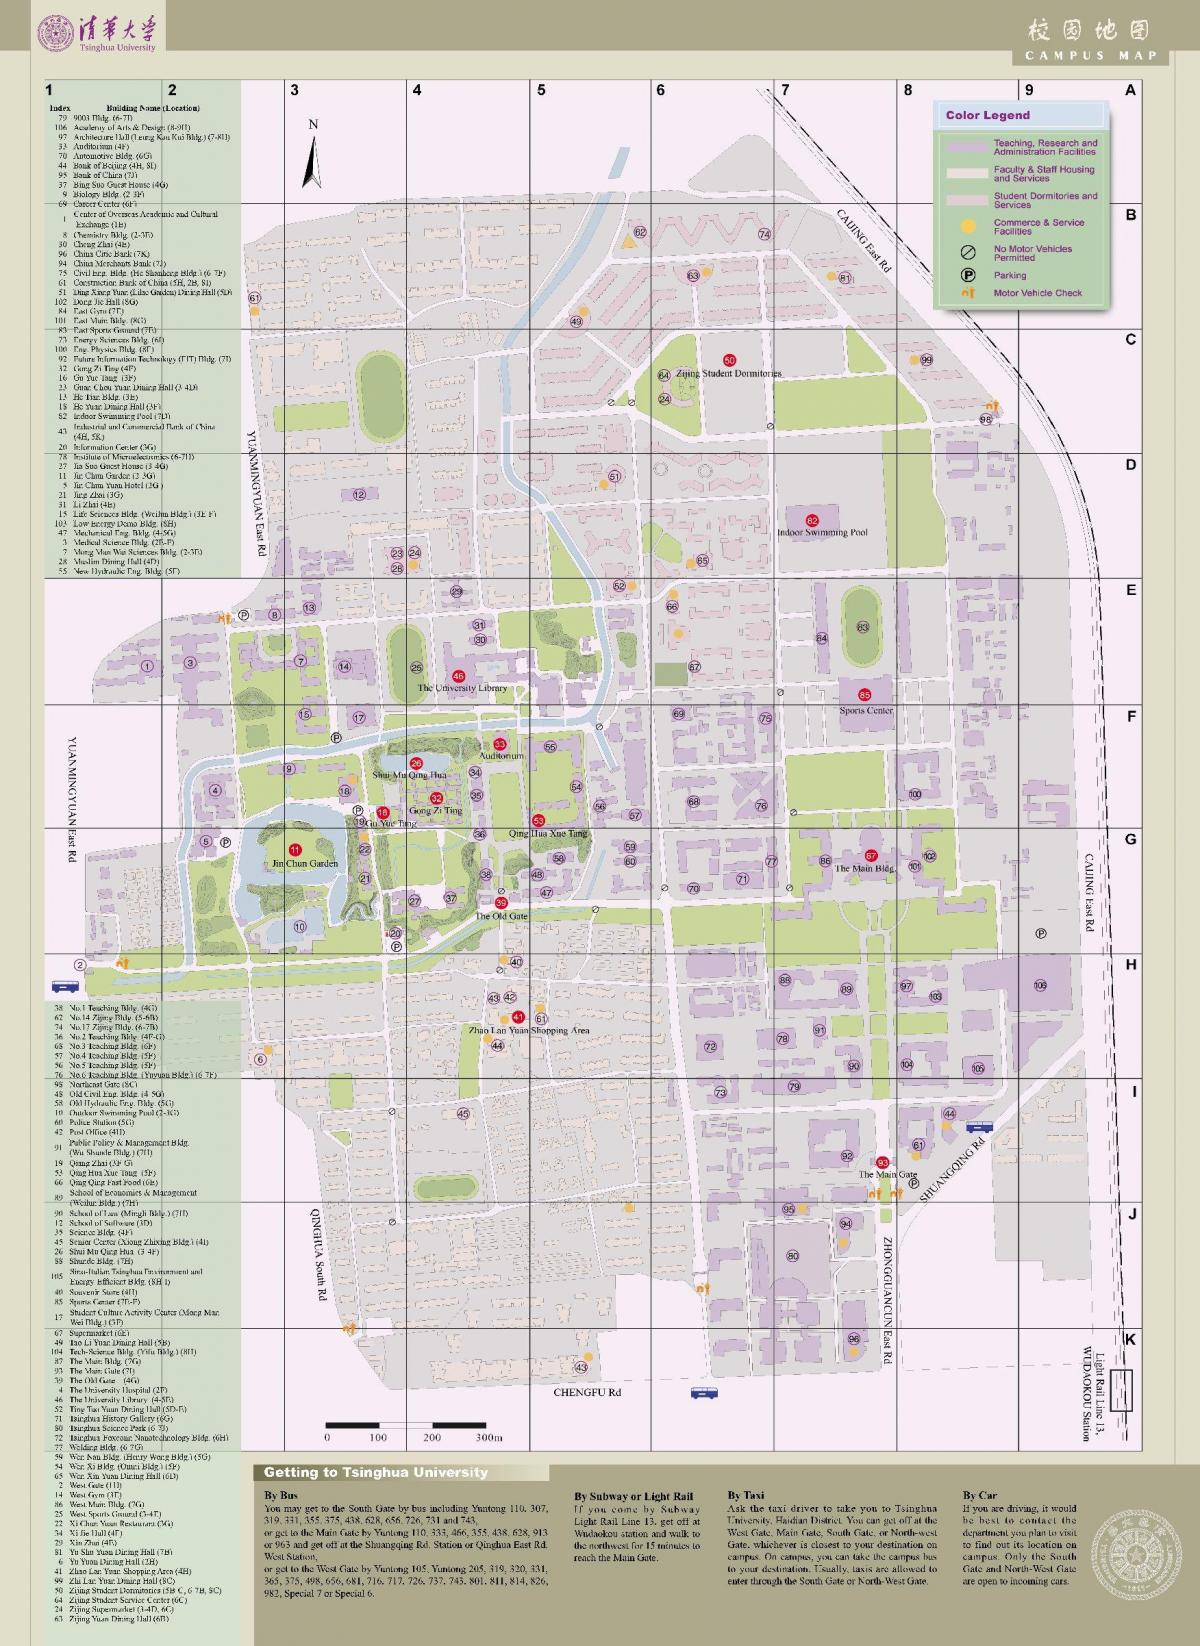 tsinghua kampus mapa